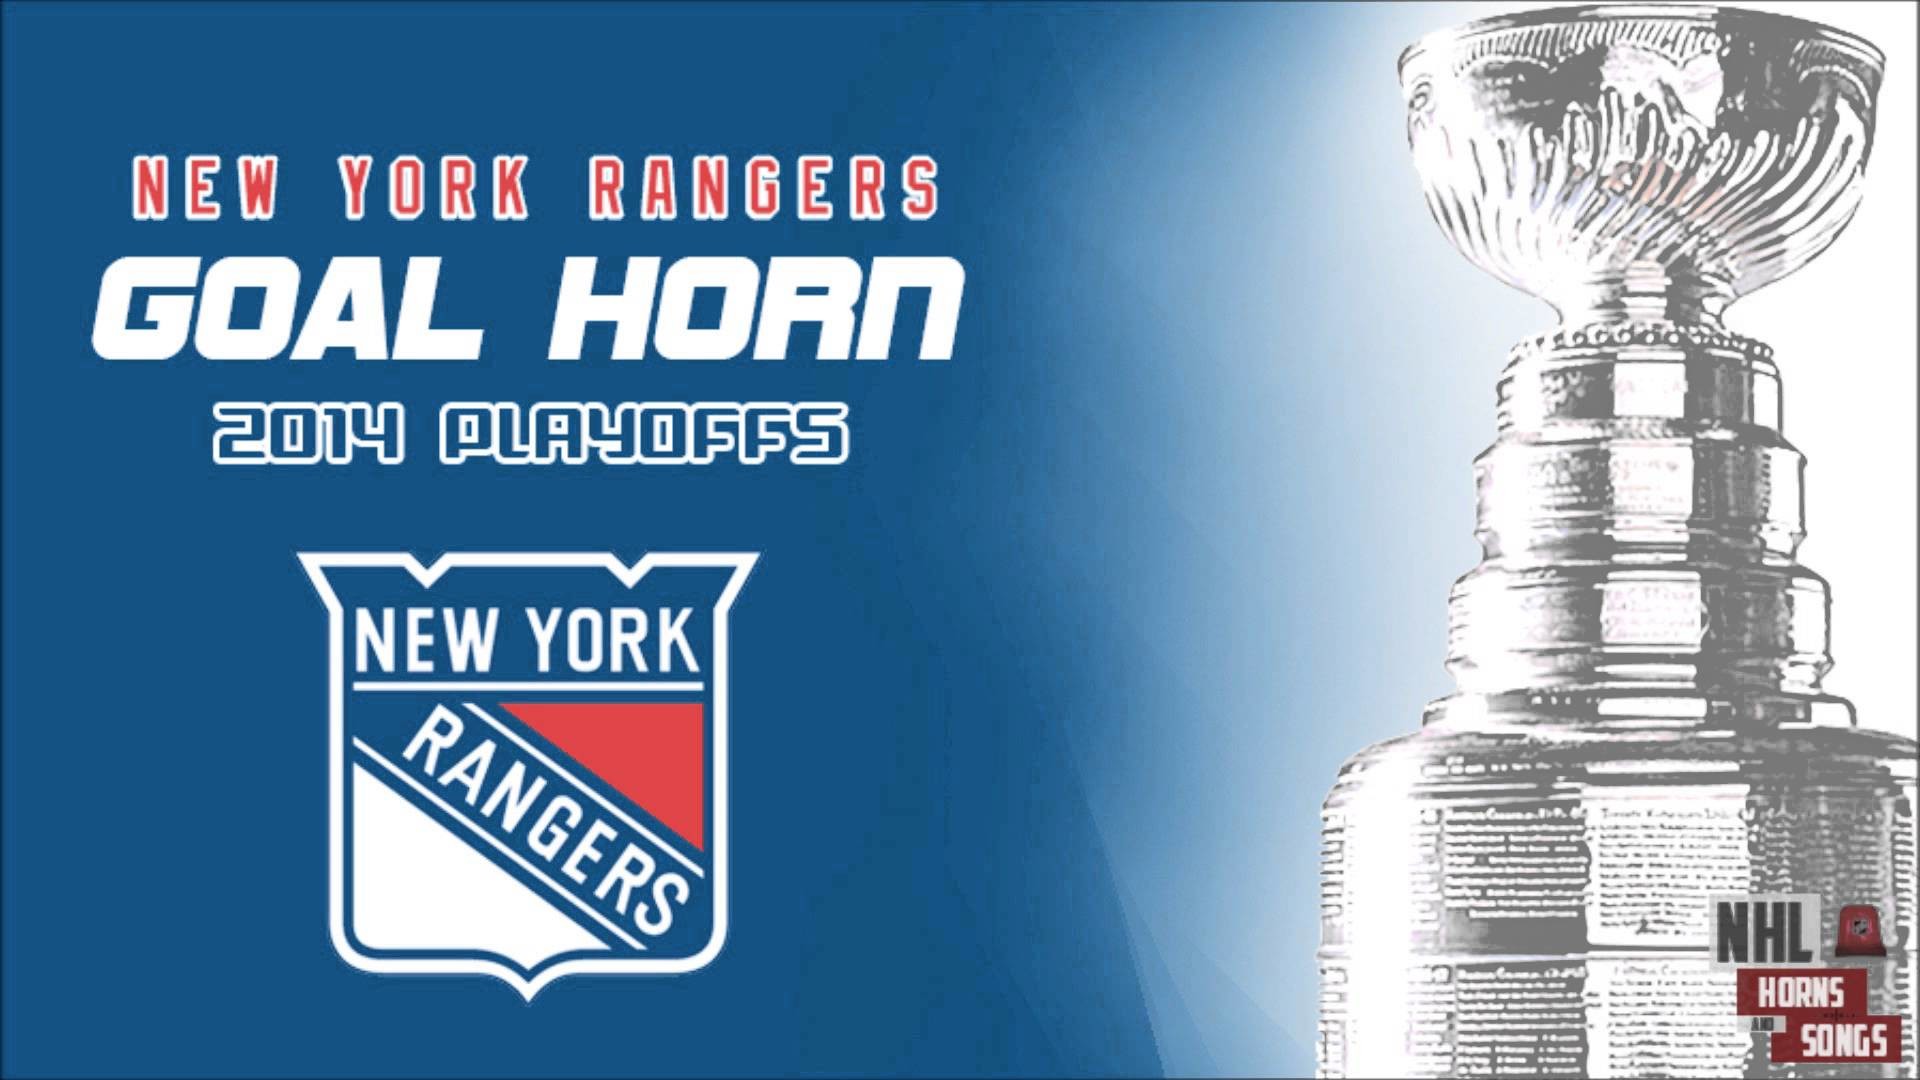 1920x1080 New-York-Rangers-2014-Playoff-Goal-Horn-%E1